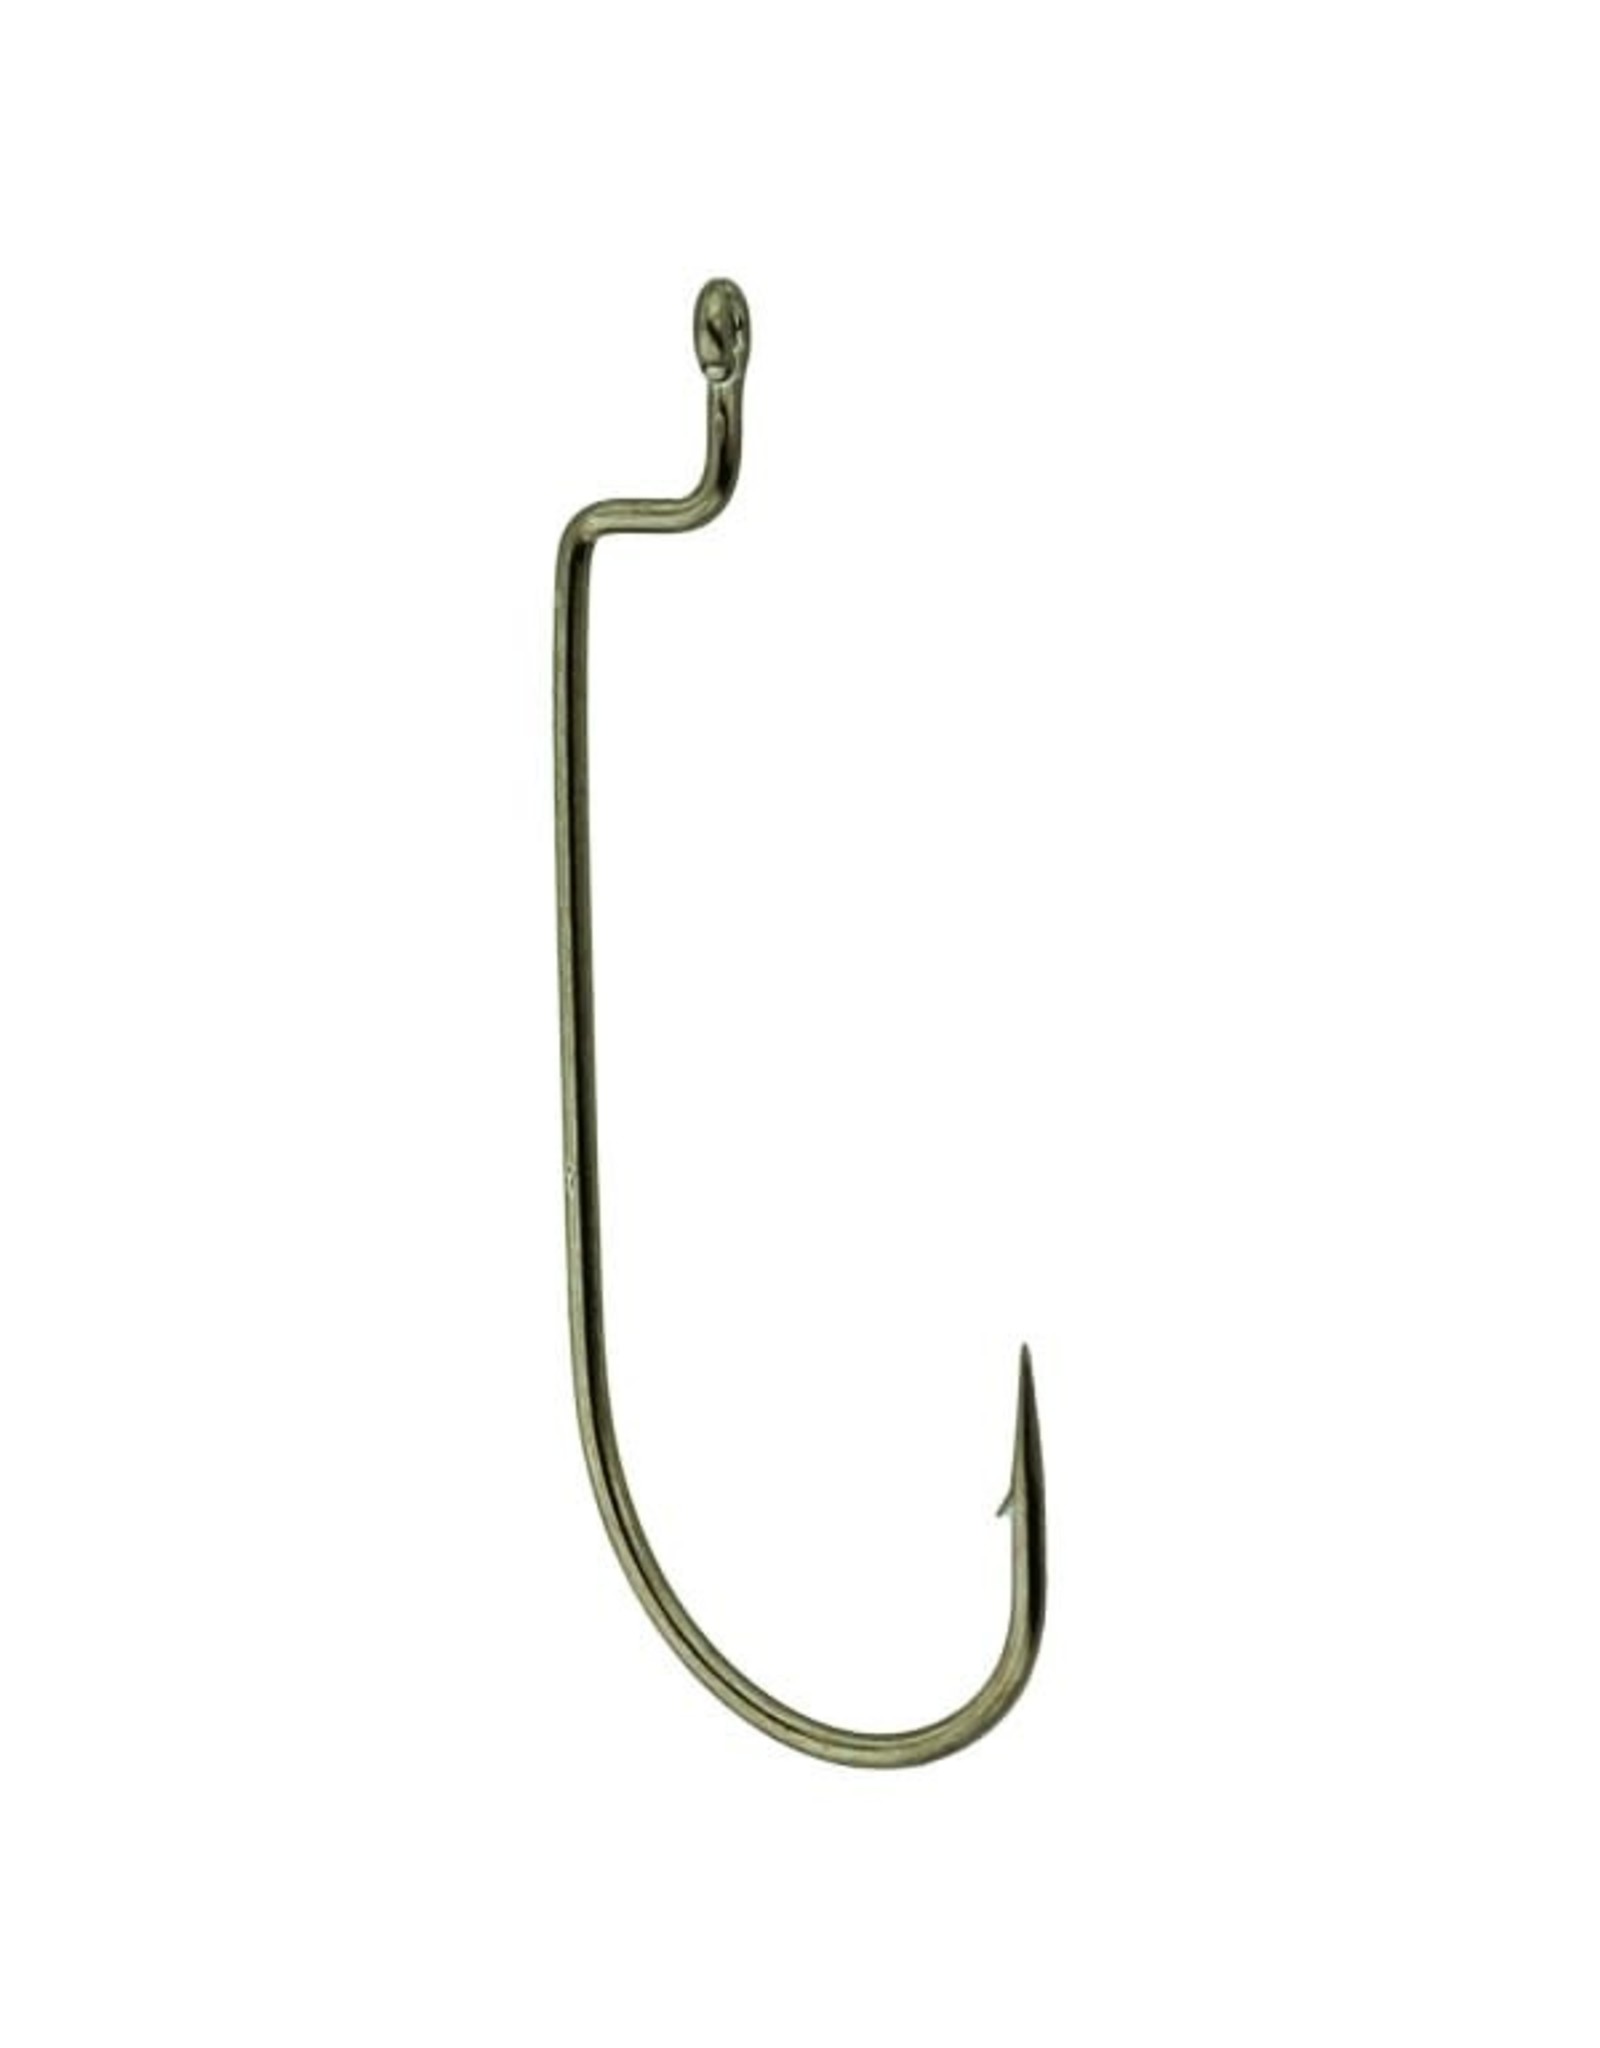 Gamakatsu Gamakatsu Offset Shank Worm Hook - Bronze - Size 1/0 - 6 Count